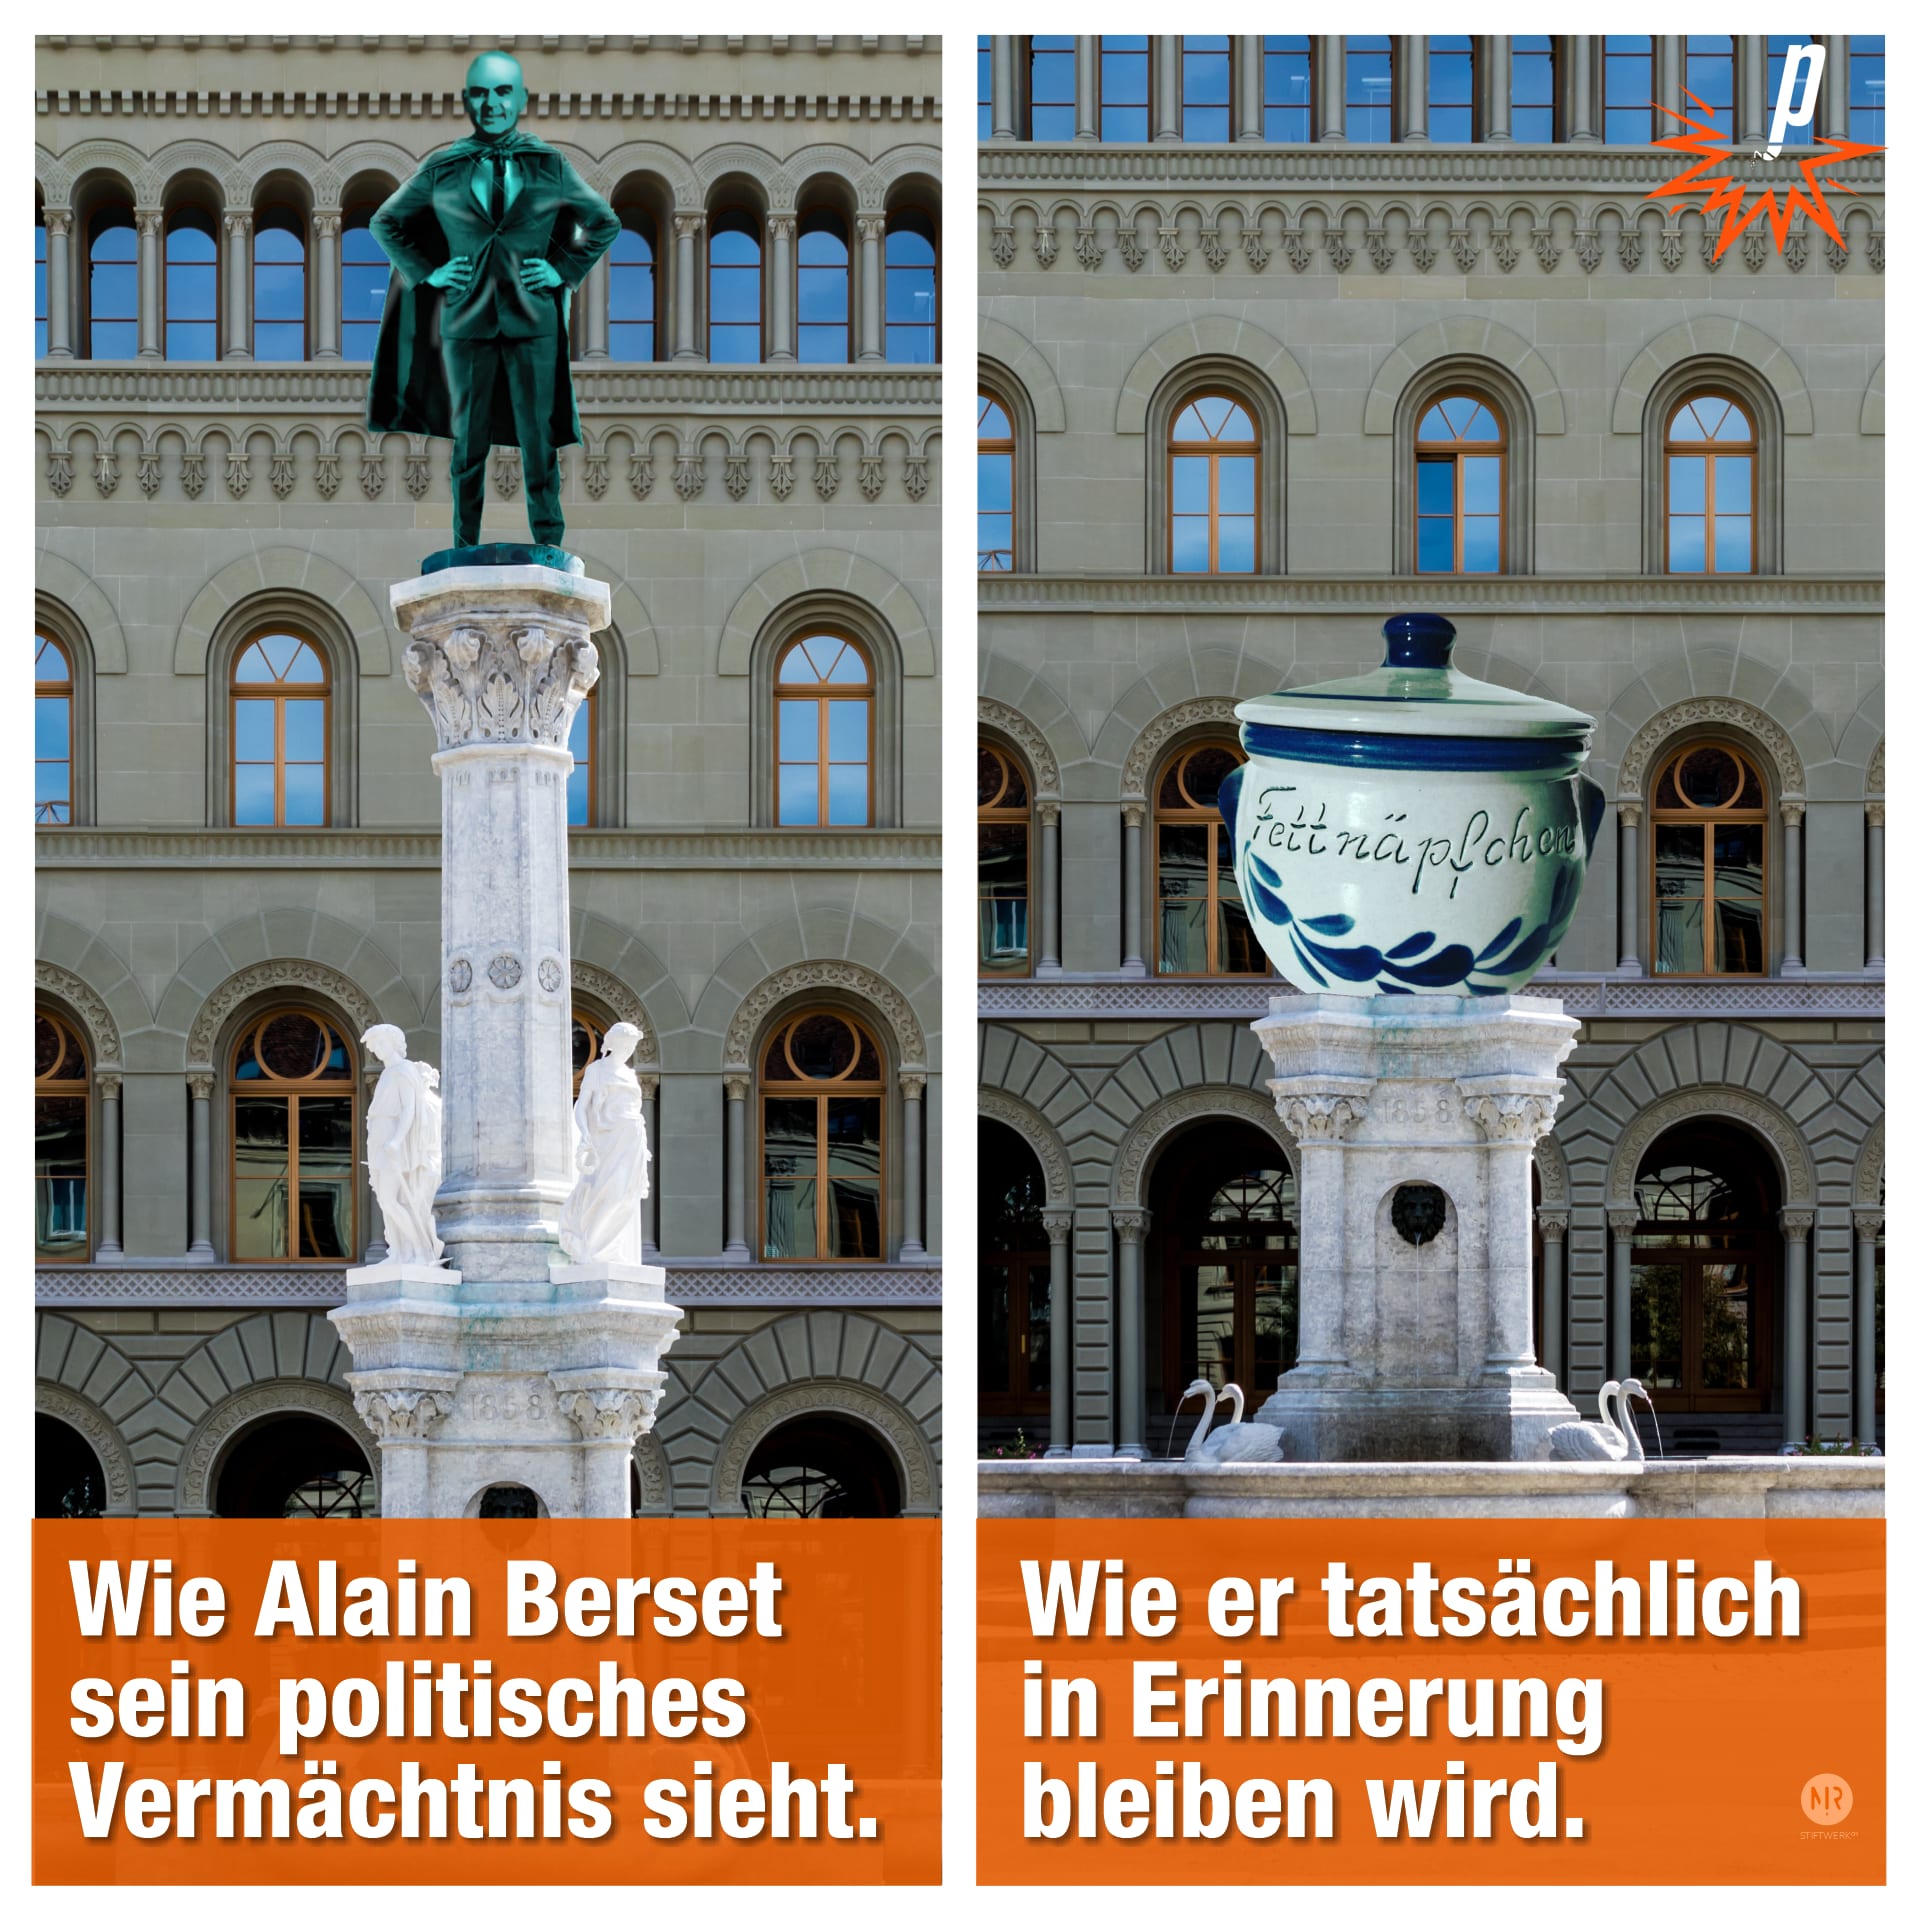 Das Bild zeigt zwei Vorschläge, wie dereinst ein Denkmal für Alain Berset aussehen könnte: Grosser Superheld oder grosses Fettnäpfchen?